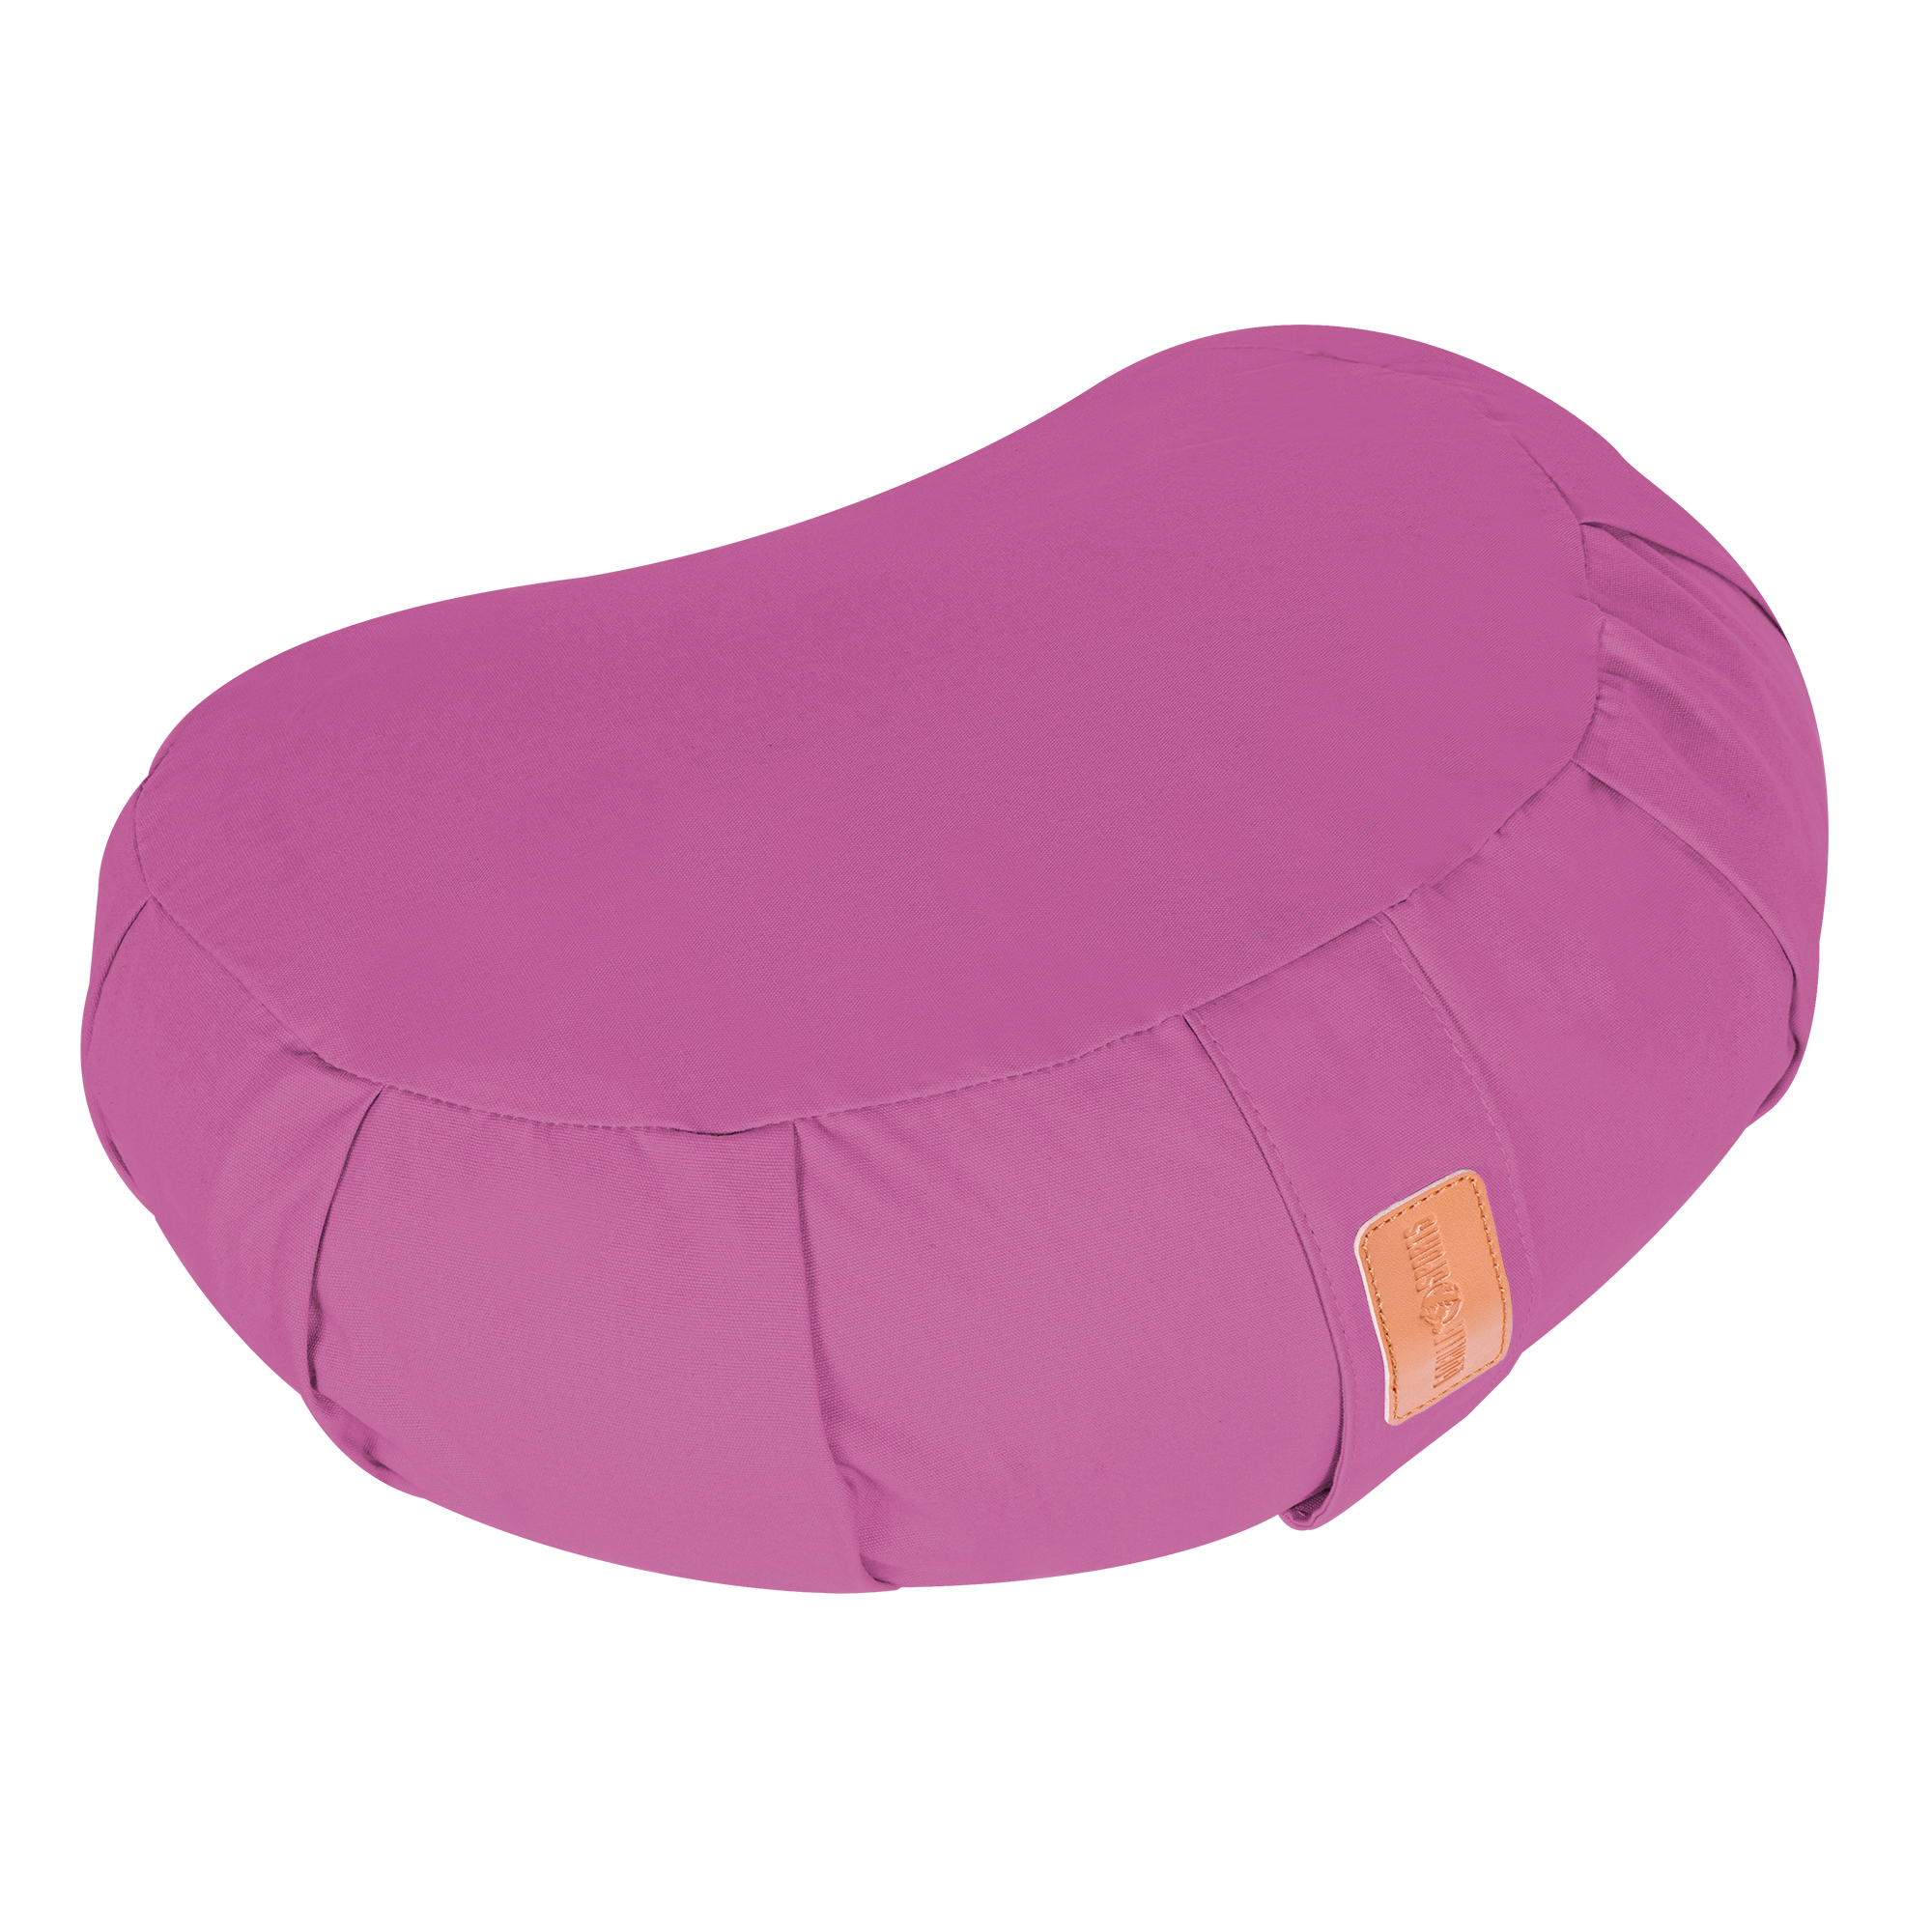 Coussin de mÃ©ditation demi-lune violet - Hauteur d'assise : 19 cm - coussin de yoga avec rembourrage en balles d'Ã©peautre - Housse en coton lavable